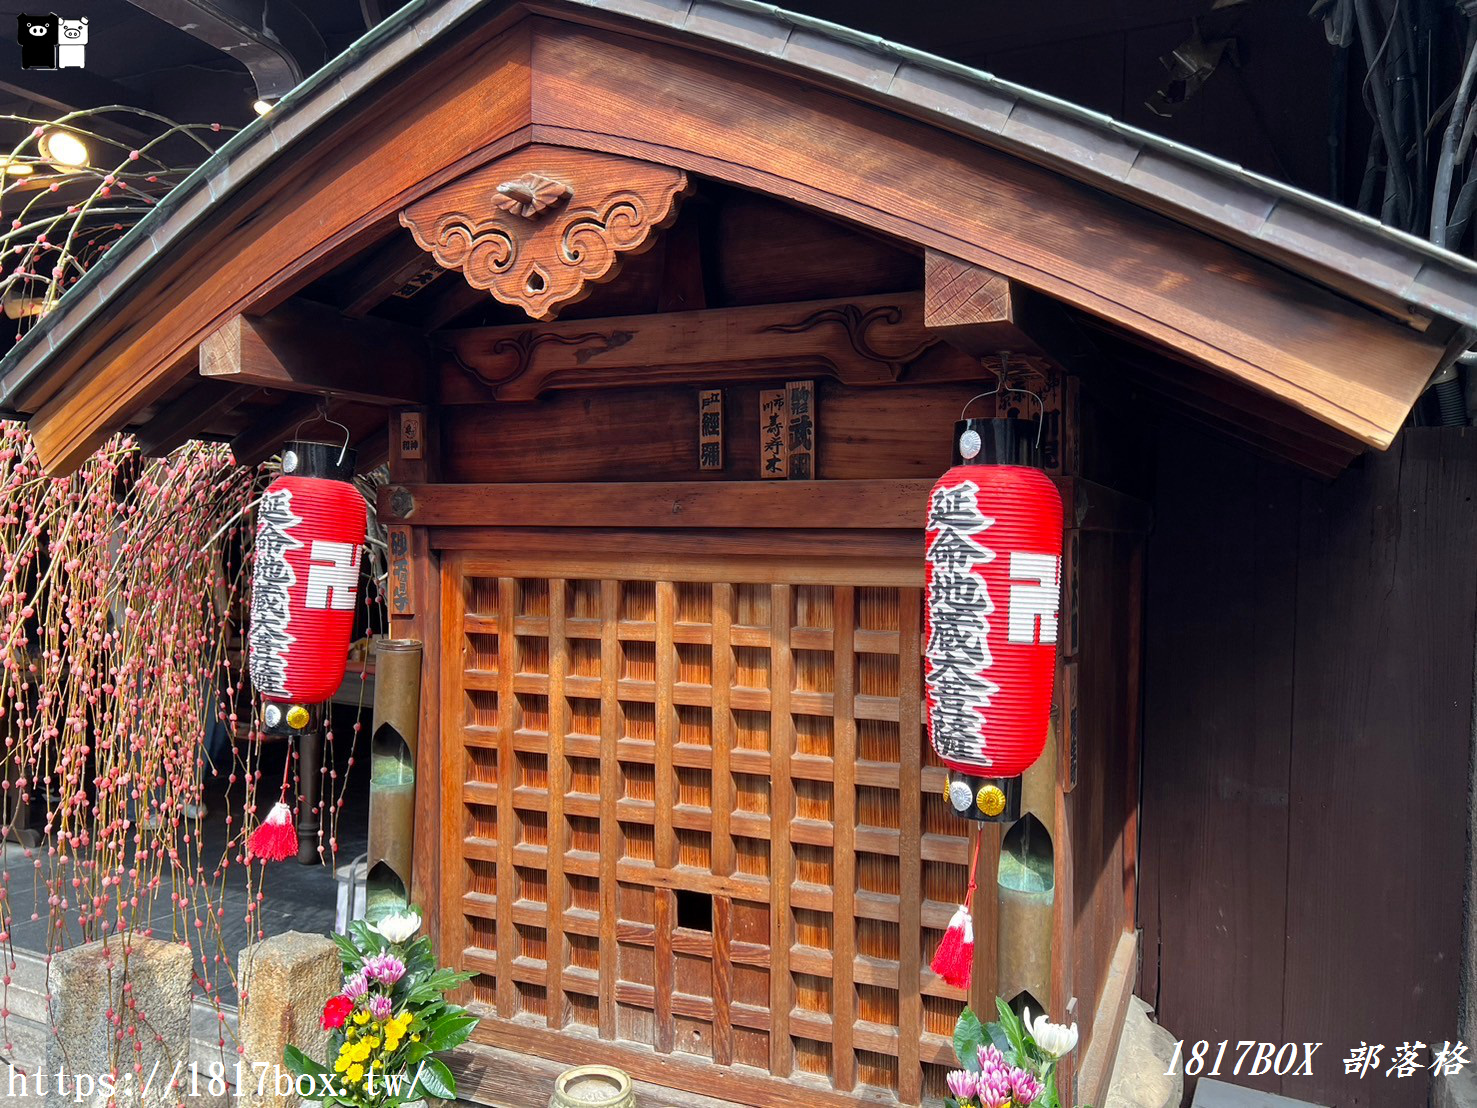 【京都景點】日本清水寺周邊景點。二寧坂(二年坂)。三年坂(產寧坂)。充滿古都風情的熱門觀光地